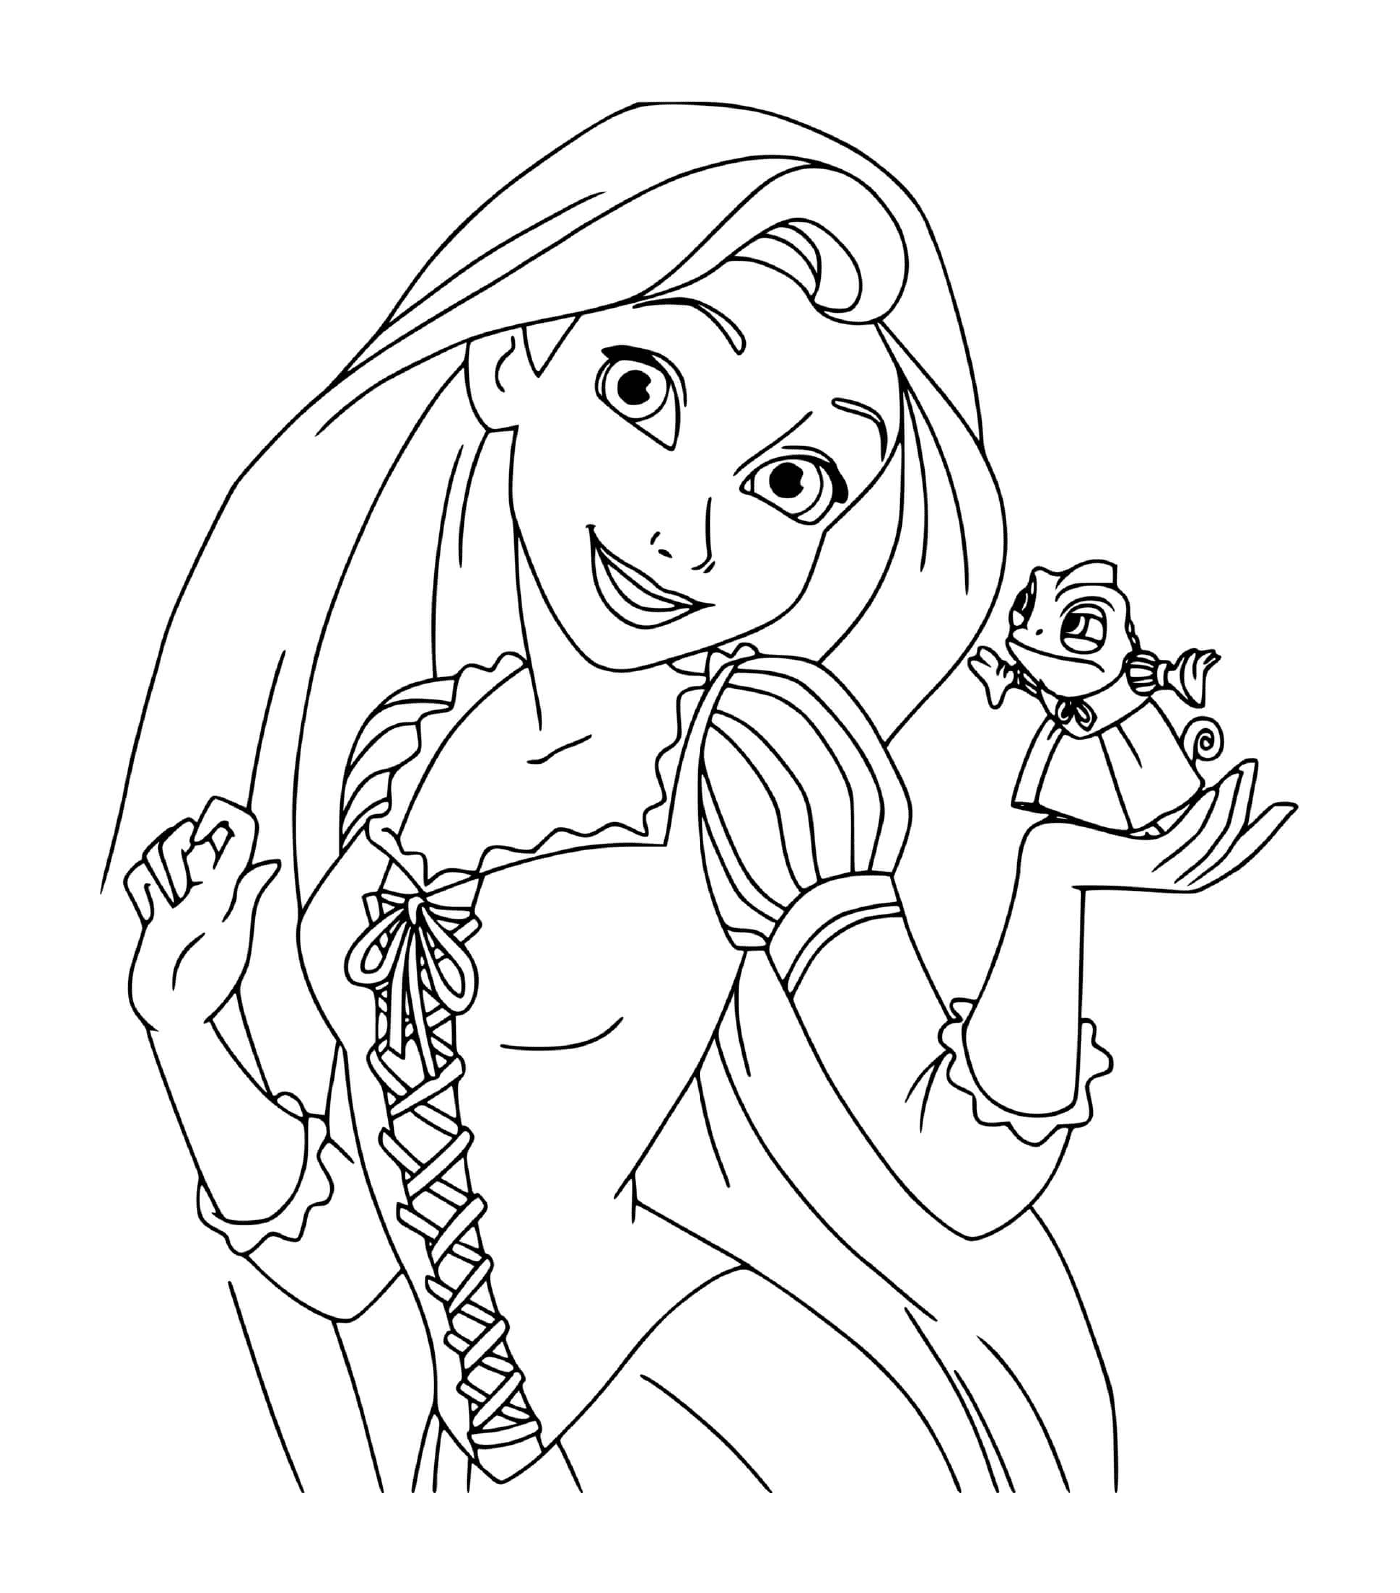 coloriage La princesse Raiponce Rapunzel du conte Raiponce des freres Grimm